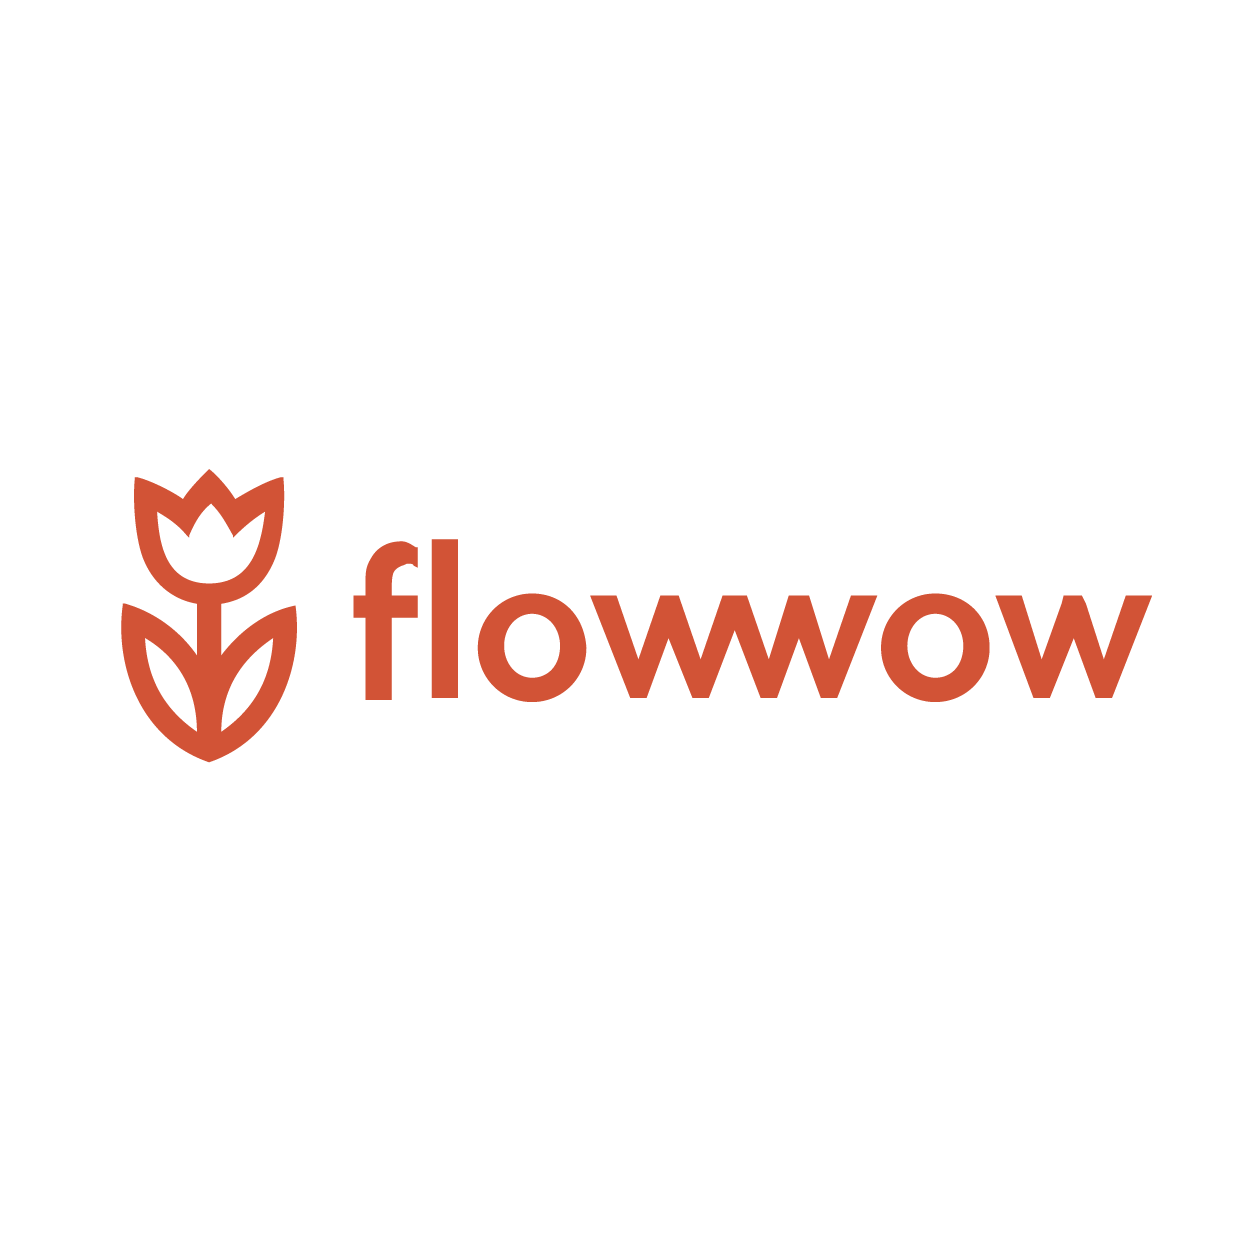 Flowwow доставка спб. Flowwow. Flowwow logo. ФЛАУ вау. ФЛАУВАУ логотип.